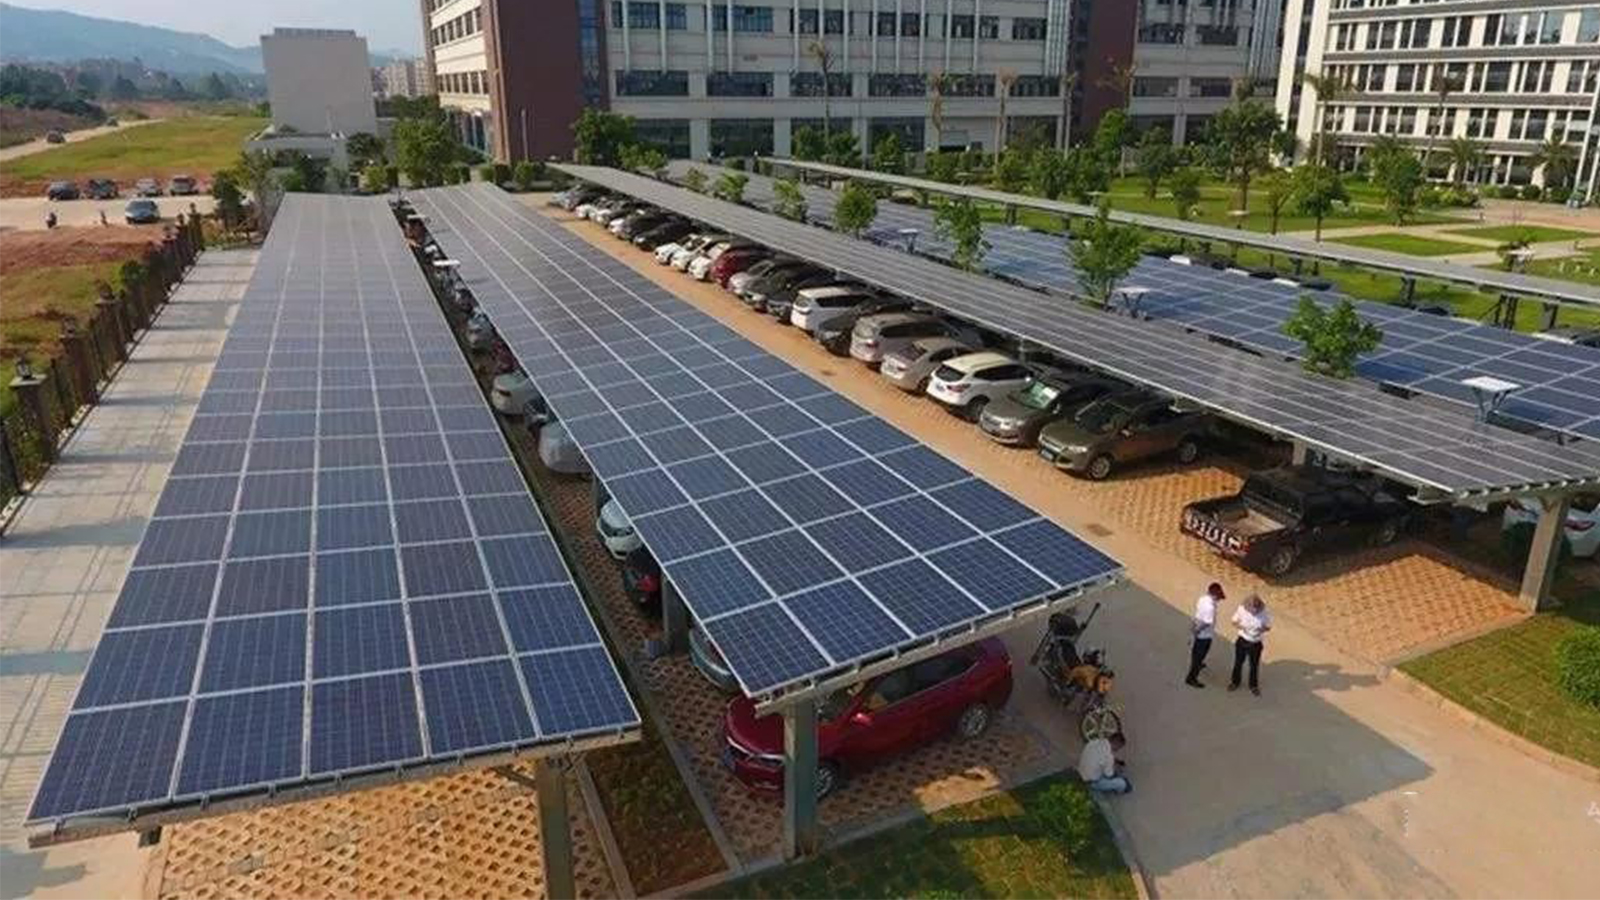 工业园区大型车棚改造成太阳能发电车棚